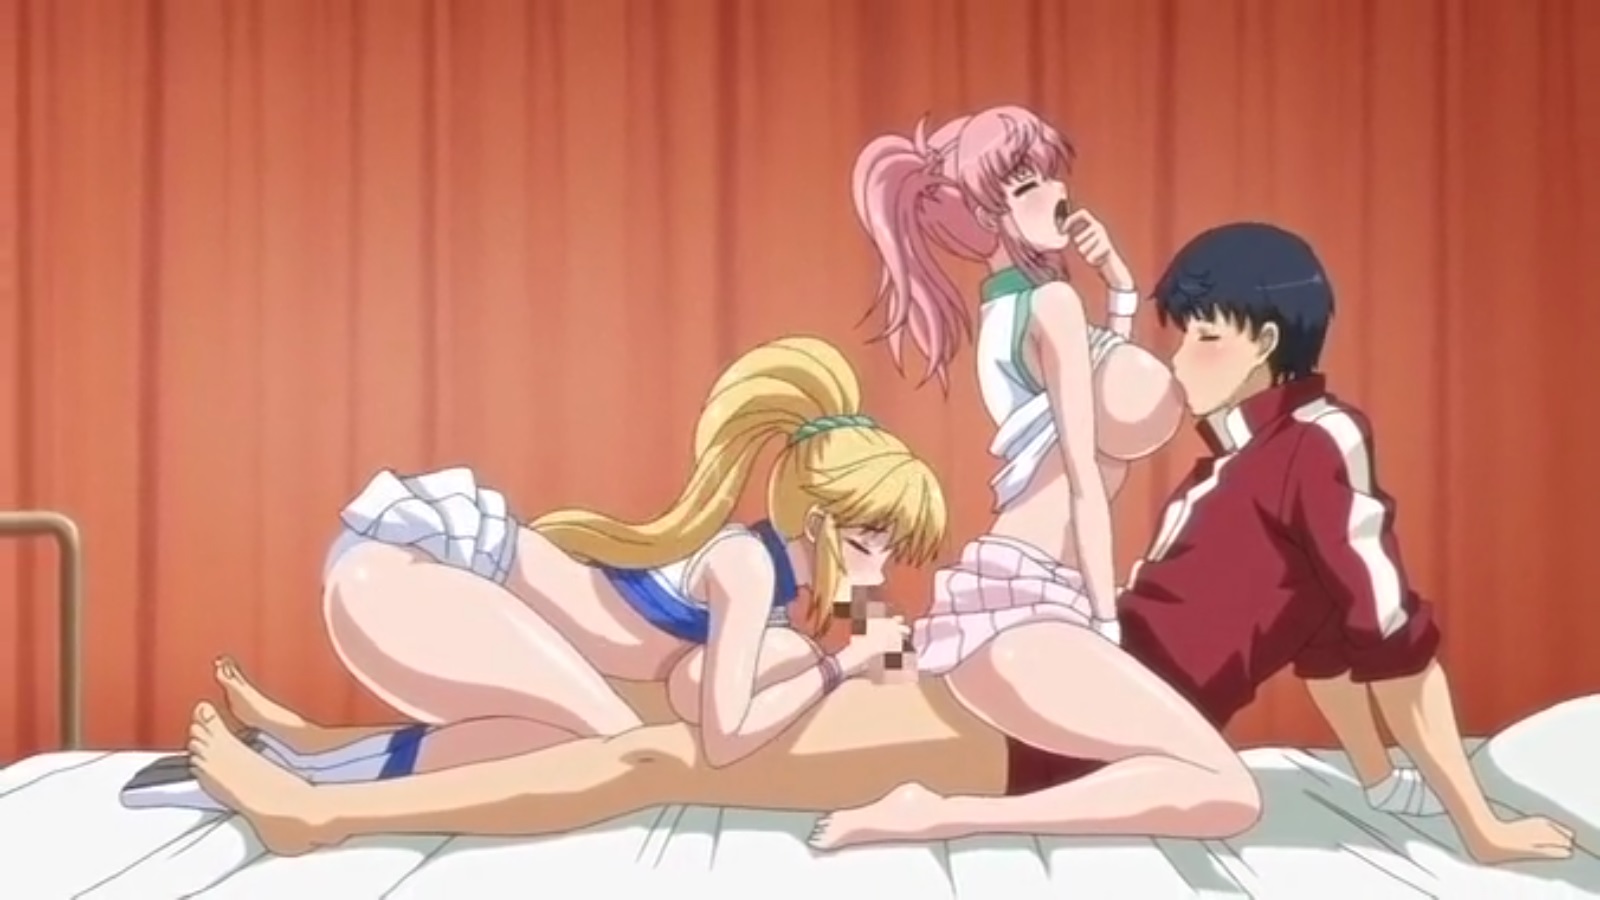 Hentai threesome anime